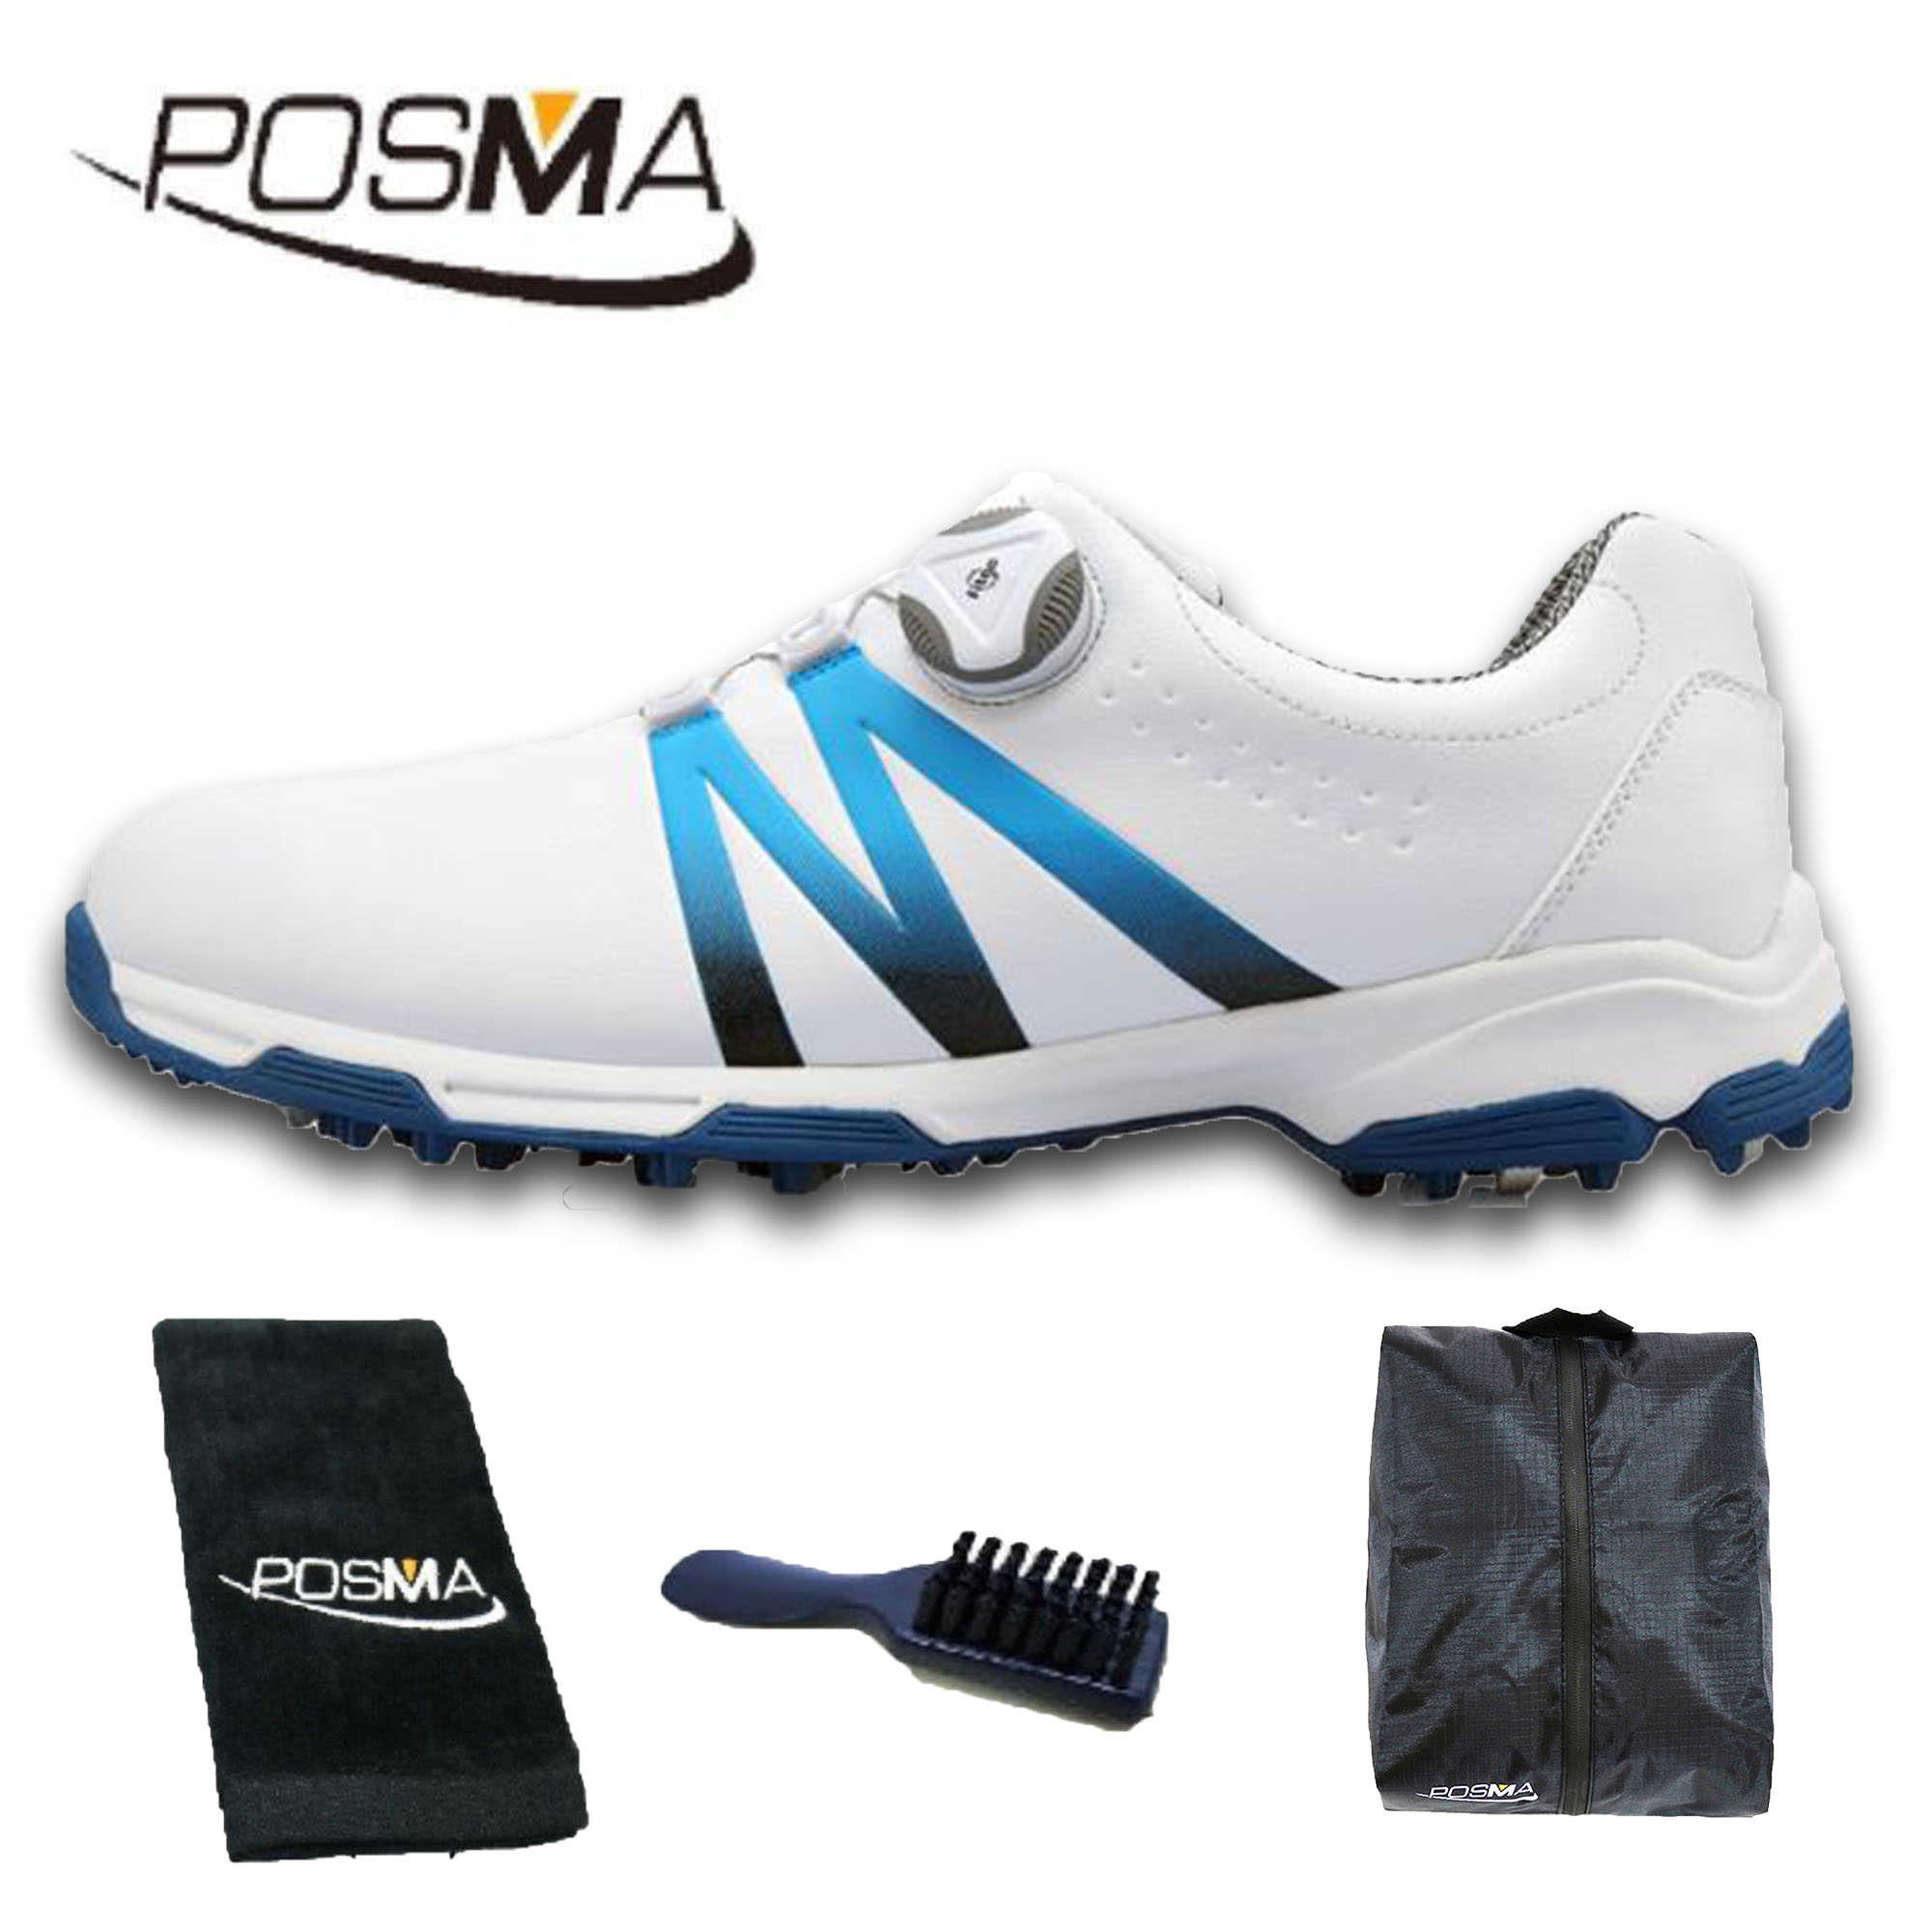 高爾夫男士球鞋 漸變色 旋轉鞋帶 防水透氣   GSH101 白 藍  配POSMA鞋包 2合1清潔刷   高爾夫球毛巾